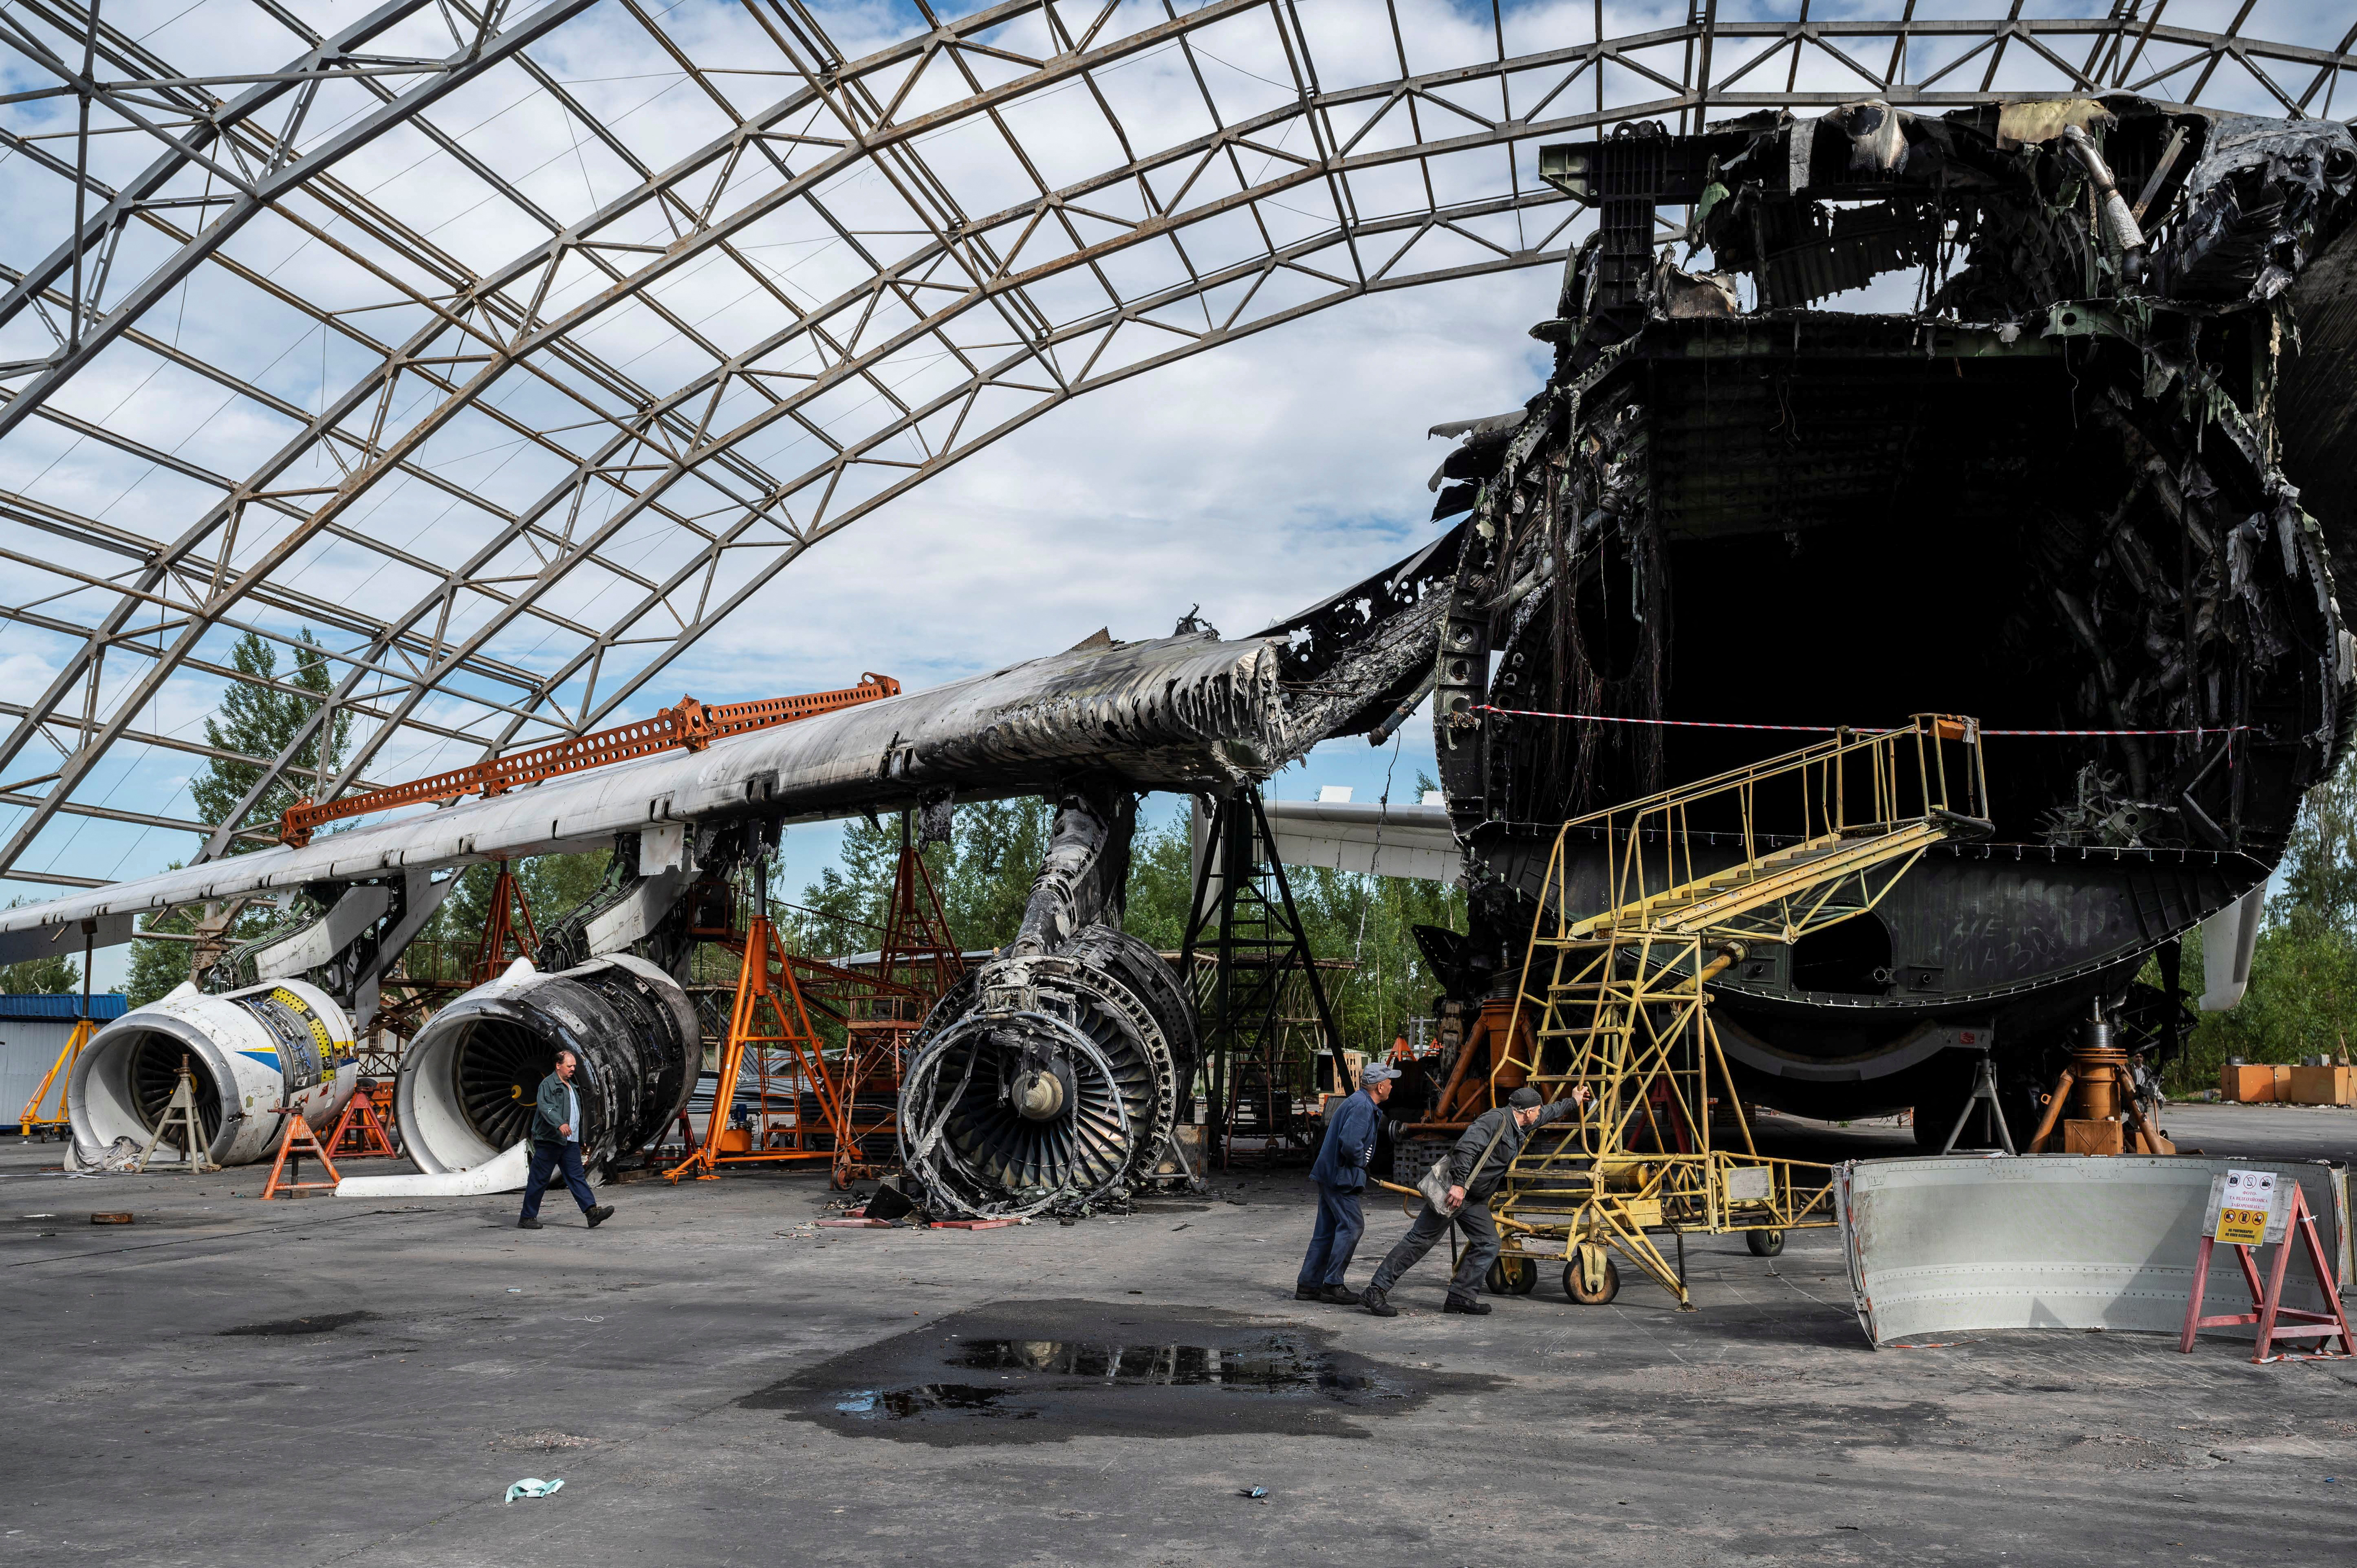 Los restos incendiados del Mriya, el avión más grande del mundo que es un símbolo para el pueblo ucraniano. (REUTERS/Viacheslav Ratynskyi)